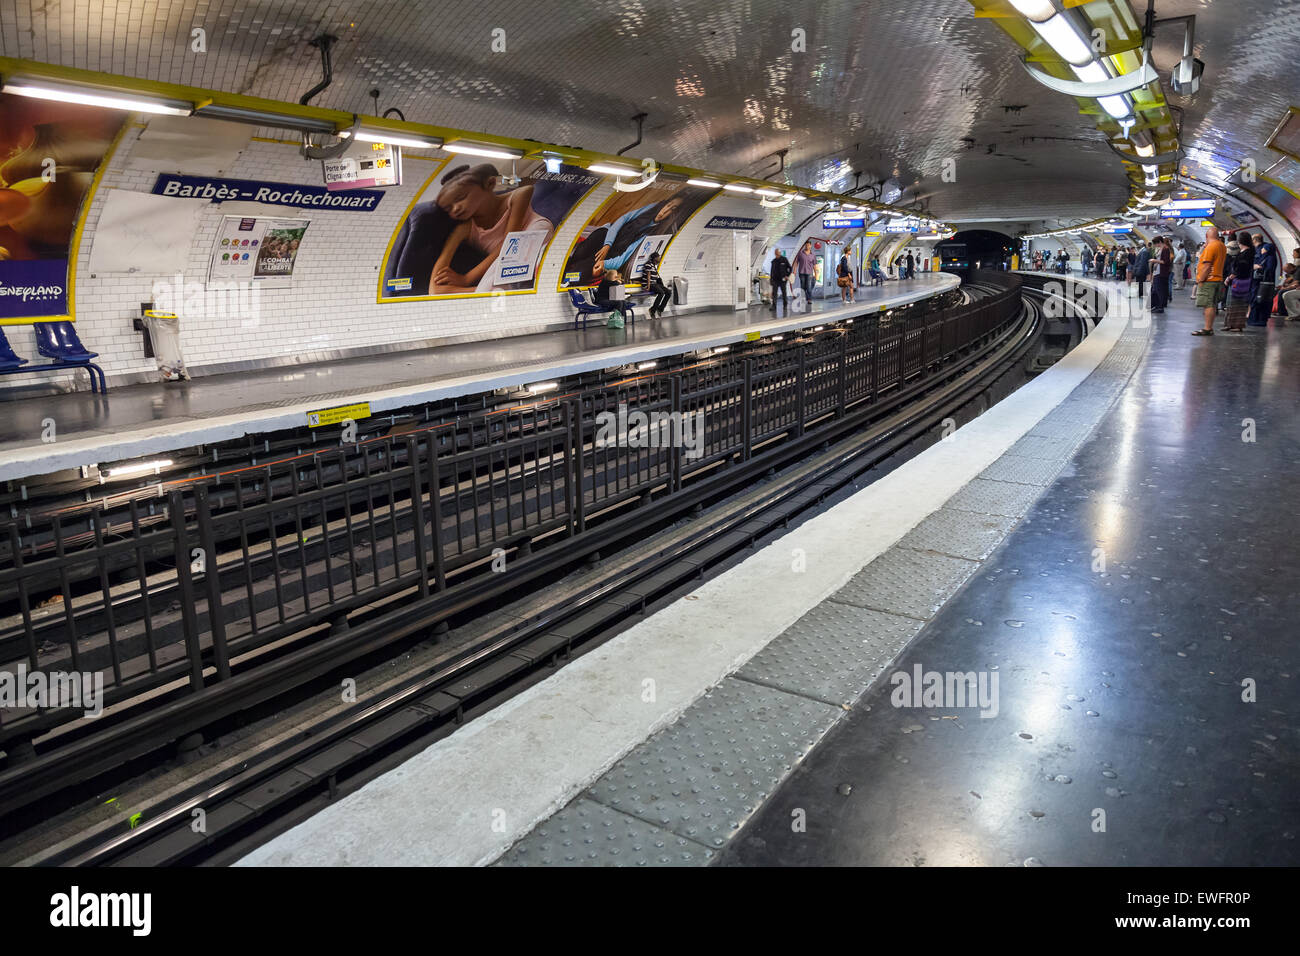 París, Francia - El 9 de agosto, 2014: Barbès-Rochechouart. La estación de metro parisino con pasajeros Foto de stock